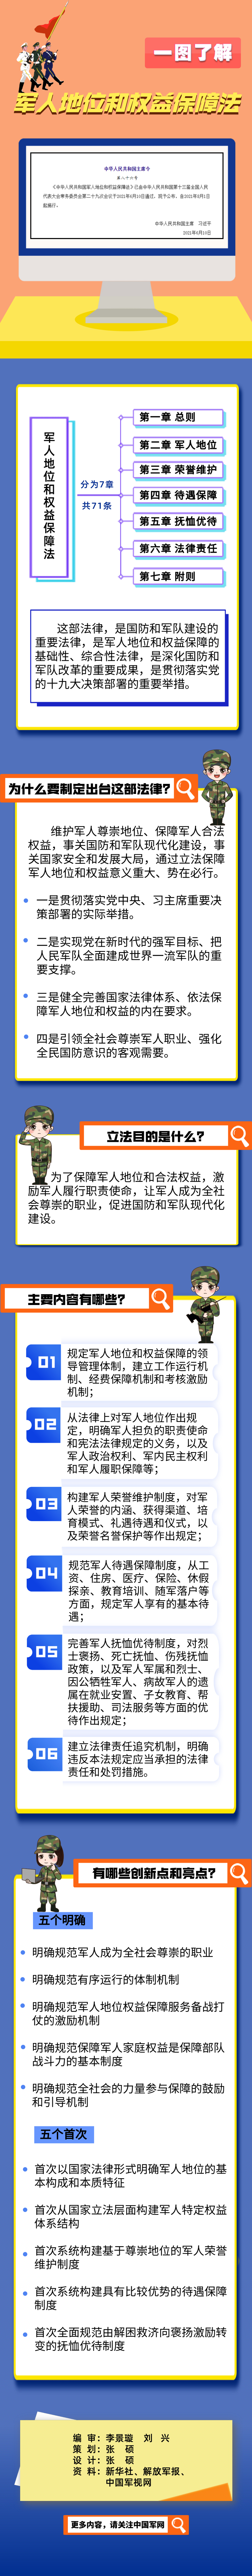 《中华人民共和国军人地位和权益保障法》正式施行 中国军网.jpg